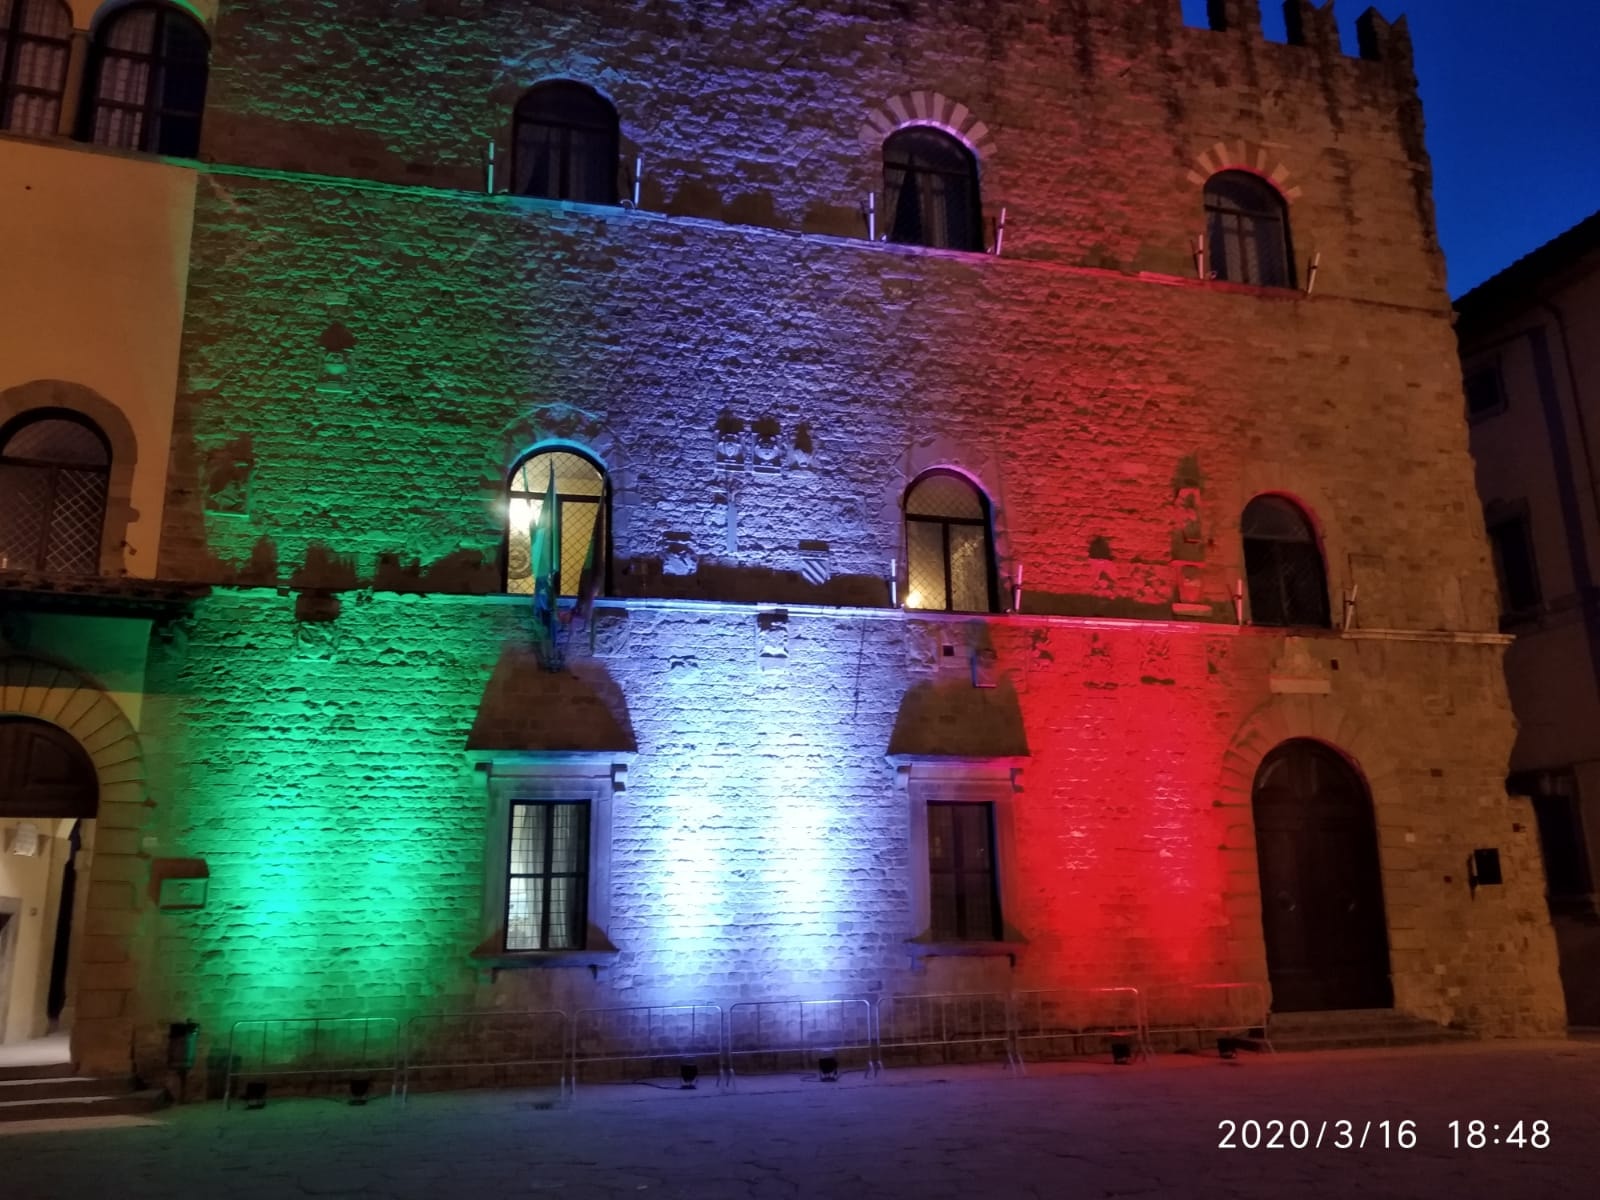 Tutti uniti contro il Coronavirus, Arezzo si illumina col tricolore